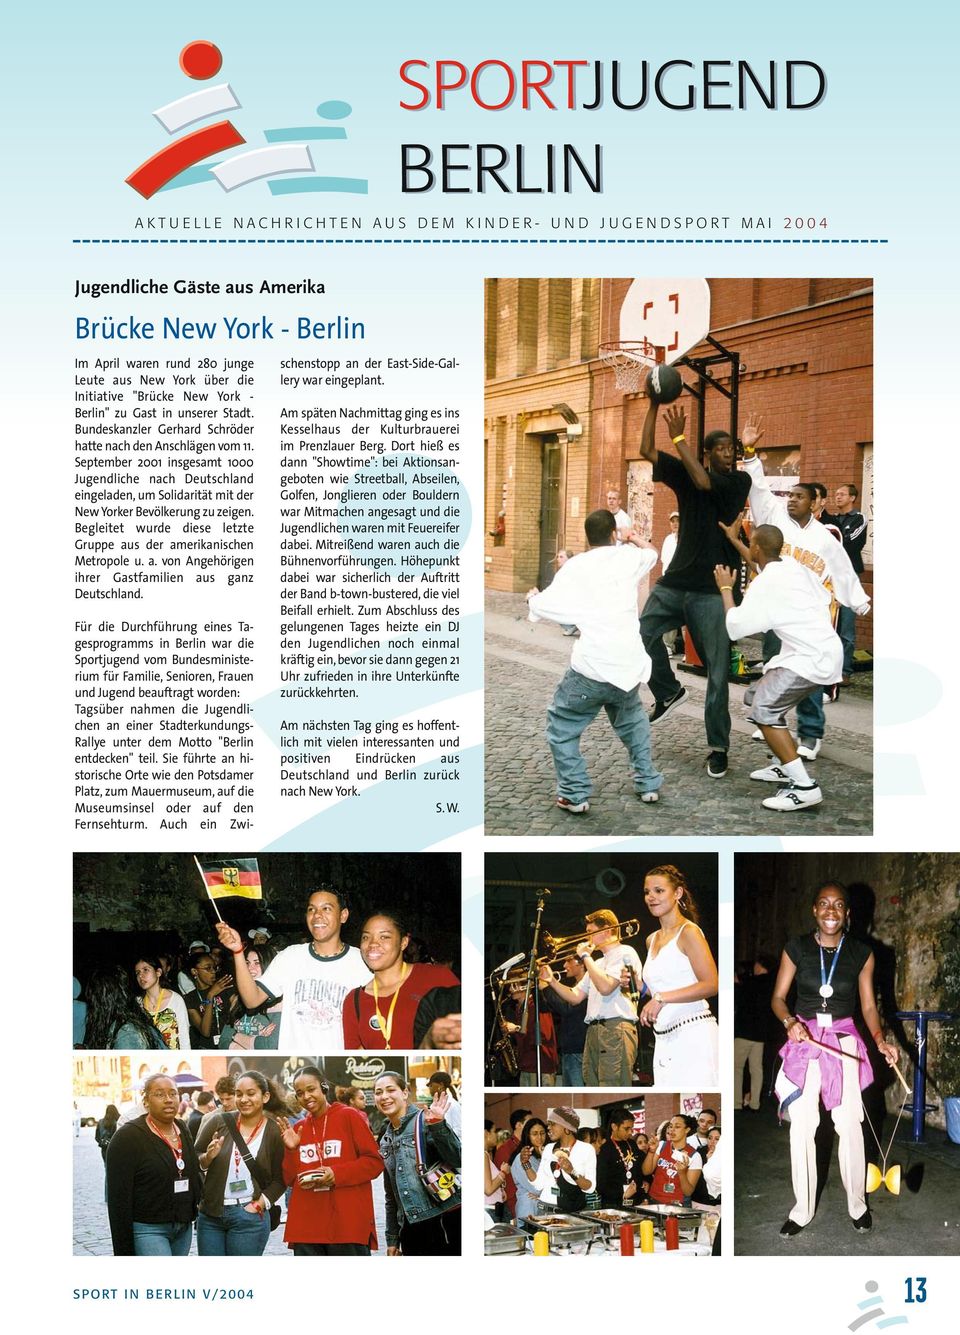 September 2001 insgesamt 1000 Jugendliche nach Deutschland eingeladen, um Solidarität mit der New Yorker Bevölkerung zu zeigen. Begleitet wurde diese letzte Gruppe aus der amerikanischen Metropole u.